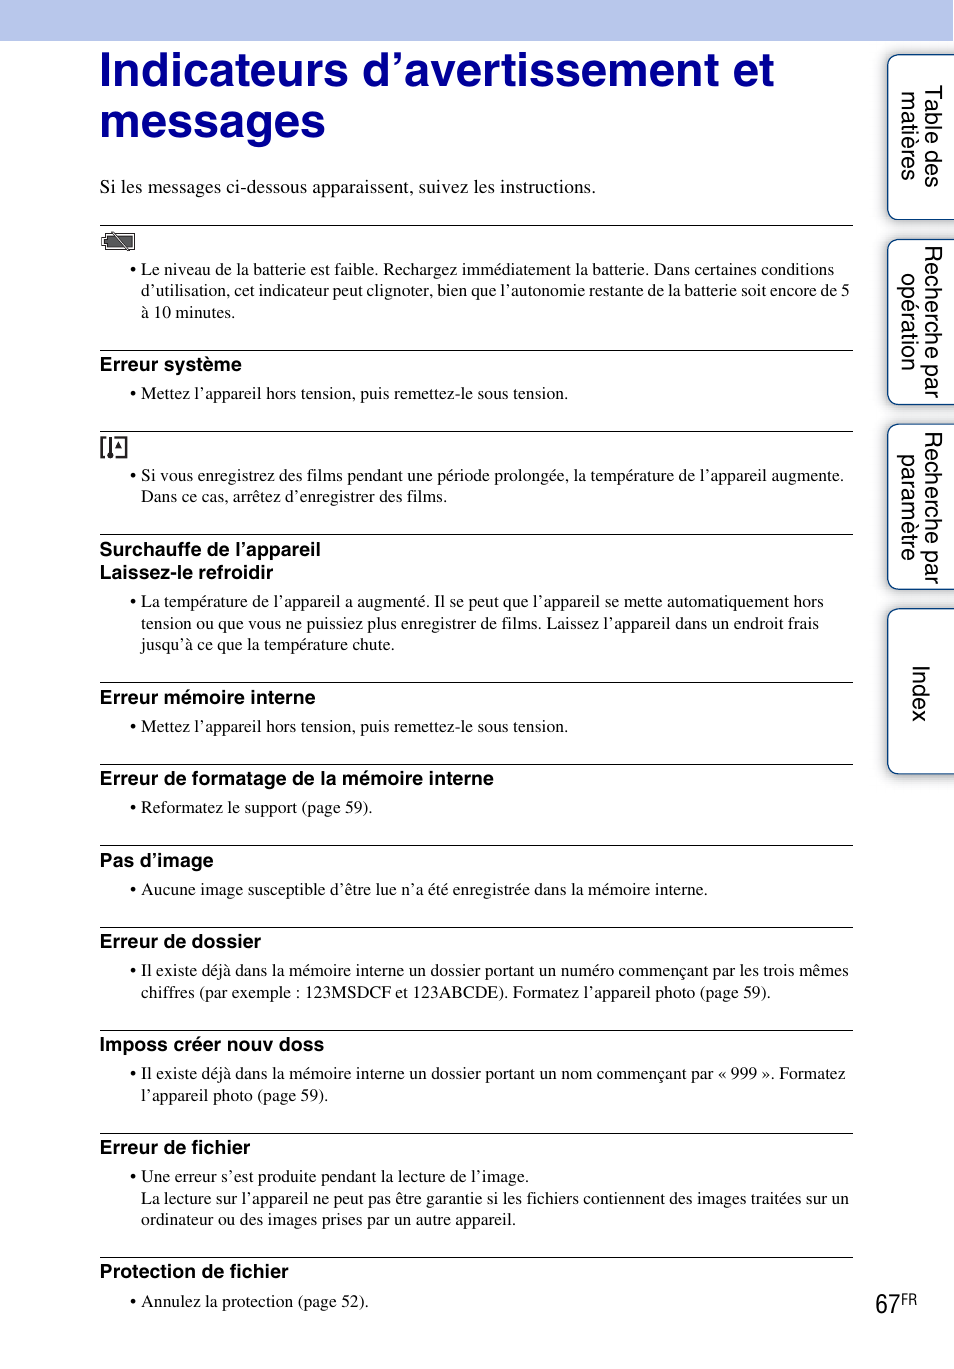 Indicateurs d’avertissement et messages | Sony bloggie MHS-TS20 Manuel d'utilisation | Page 67 / 75